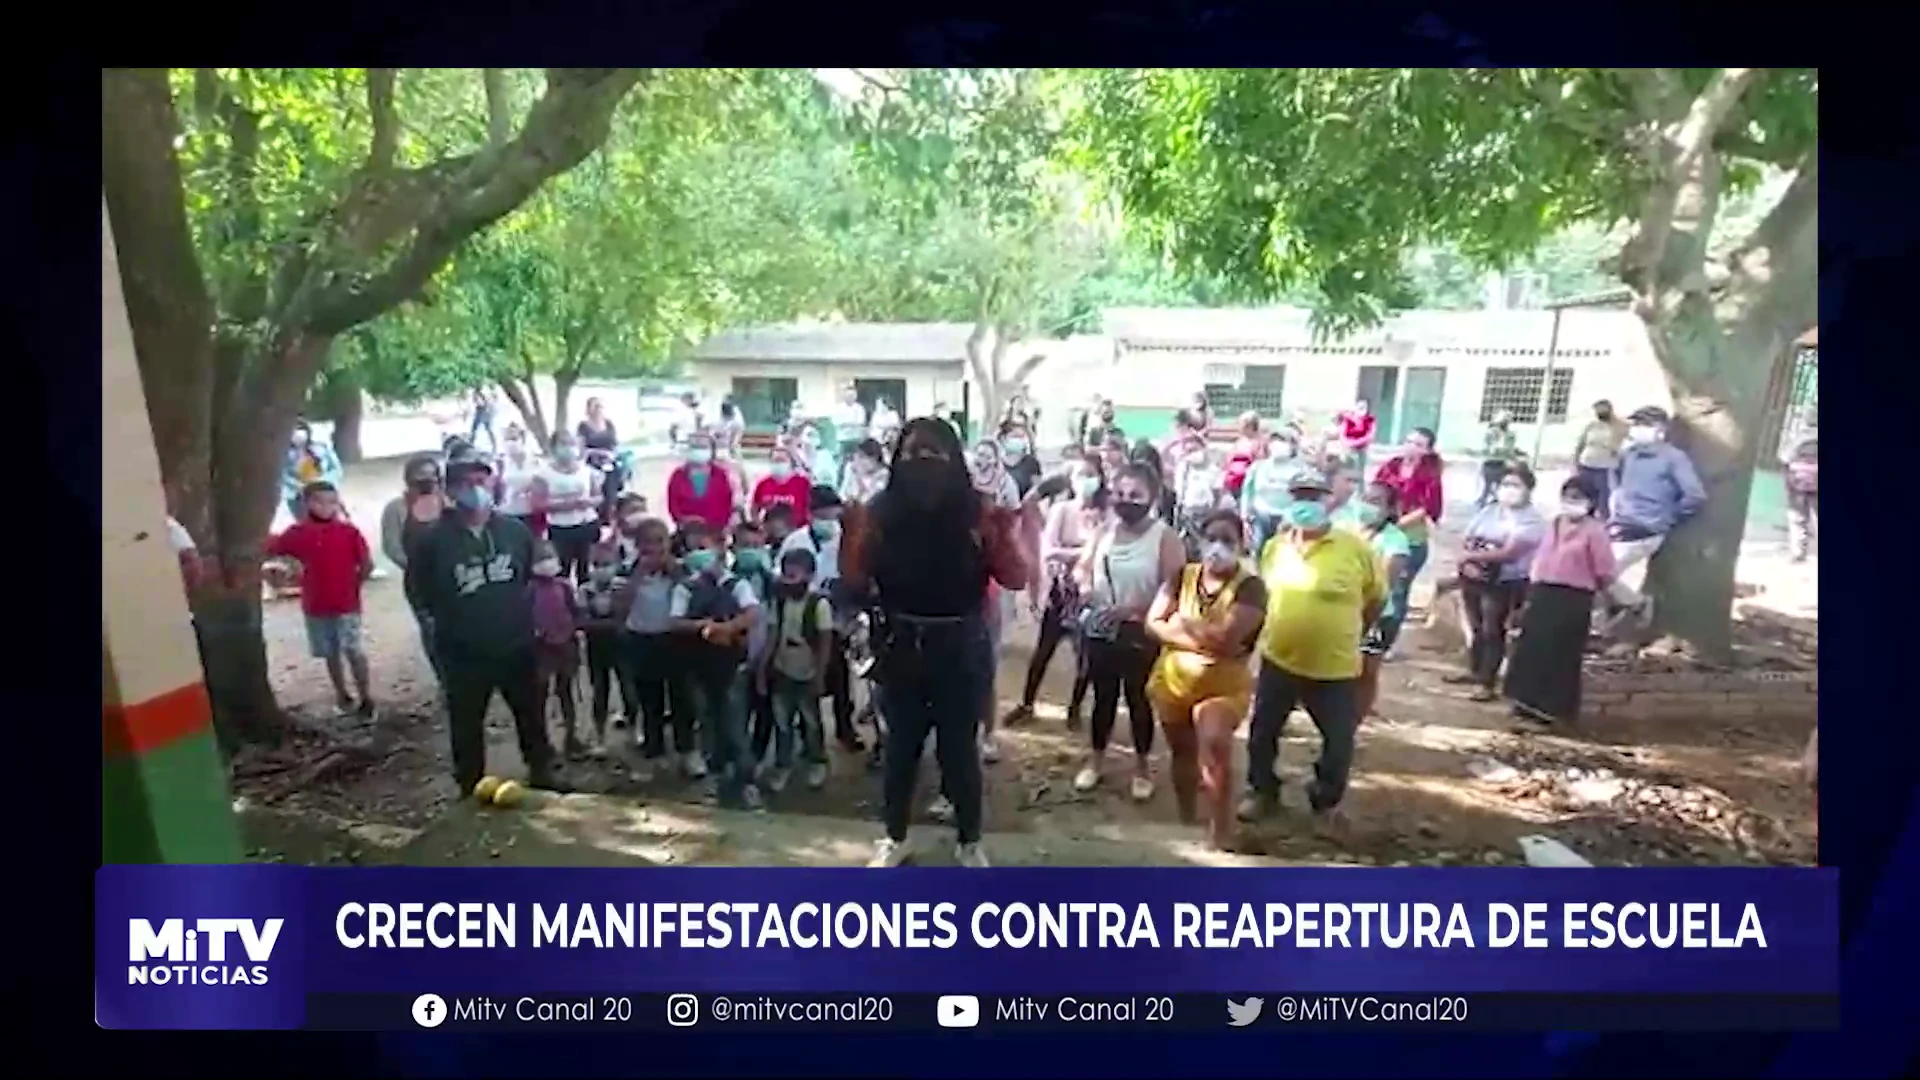 CRECEN MANIFESTACIONES CONTRA REAPERTURA DE ESCUELA